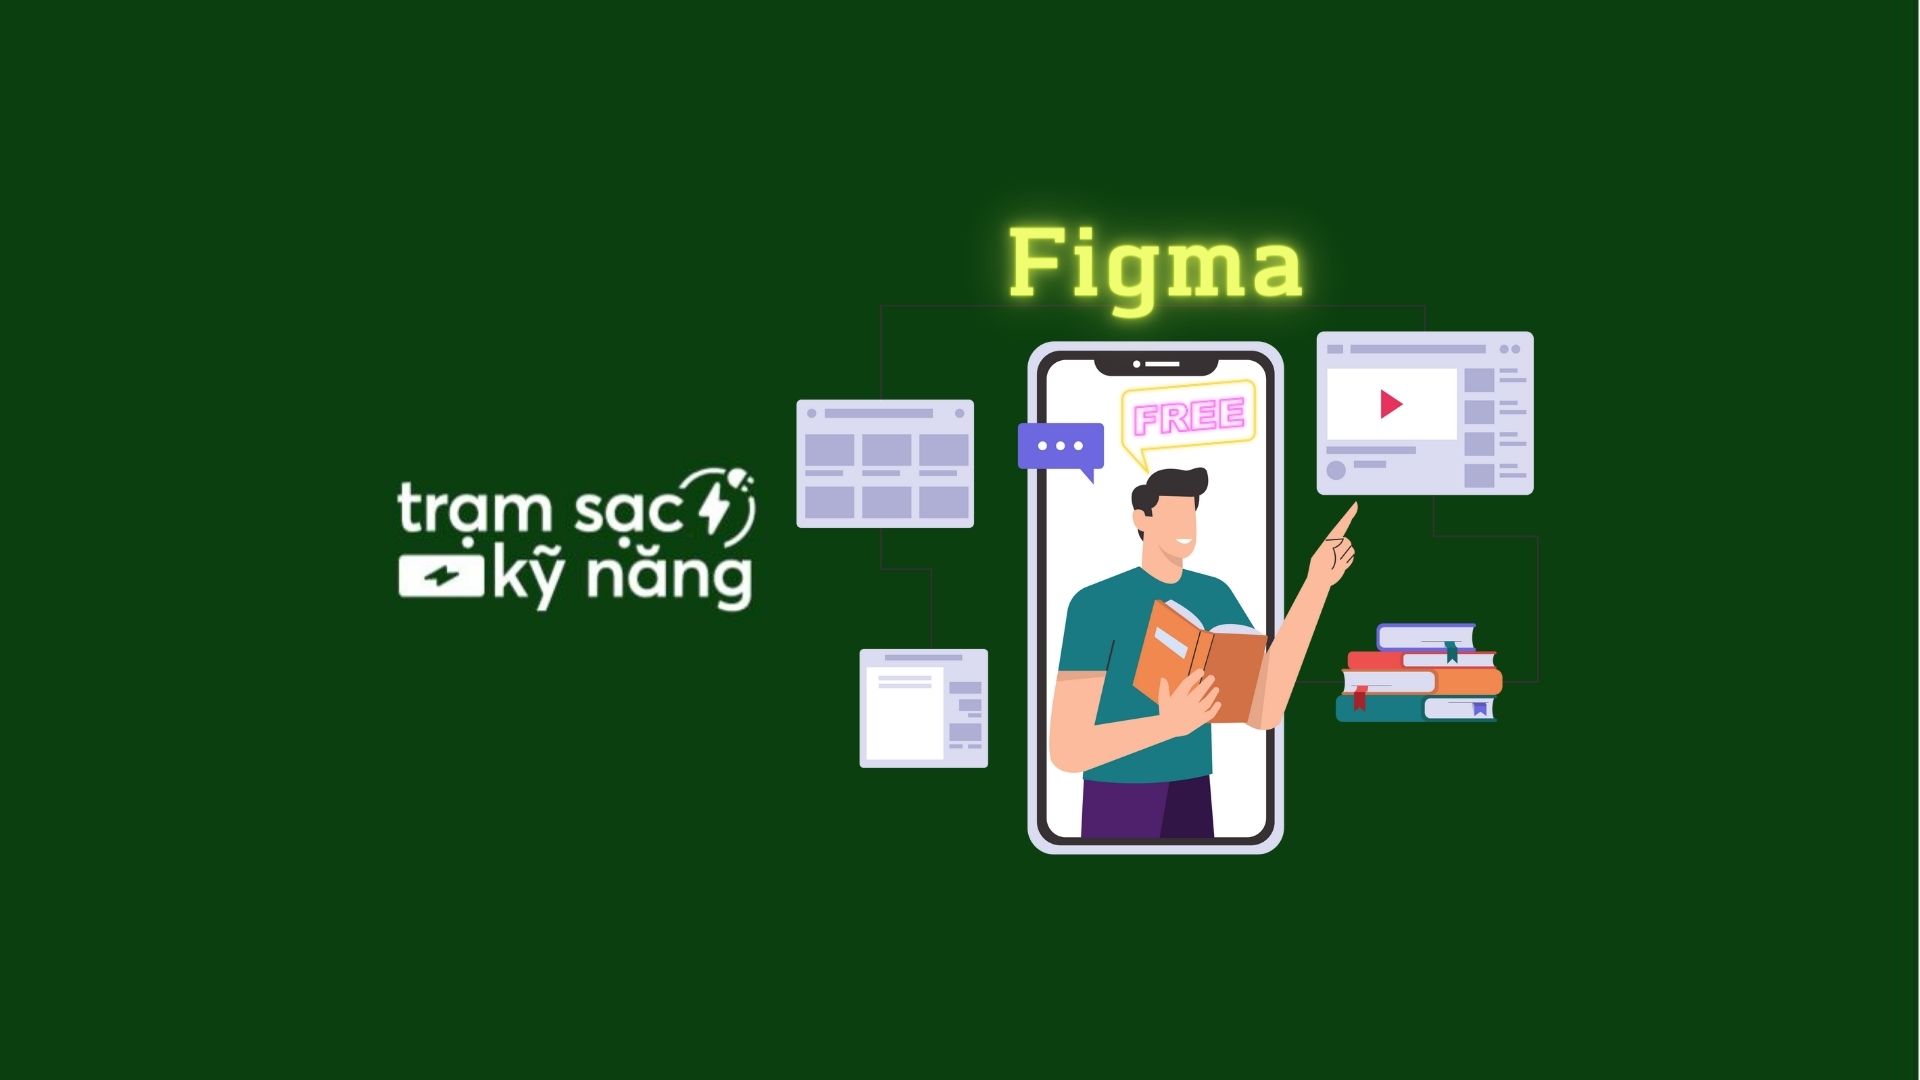 figma là gì